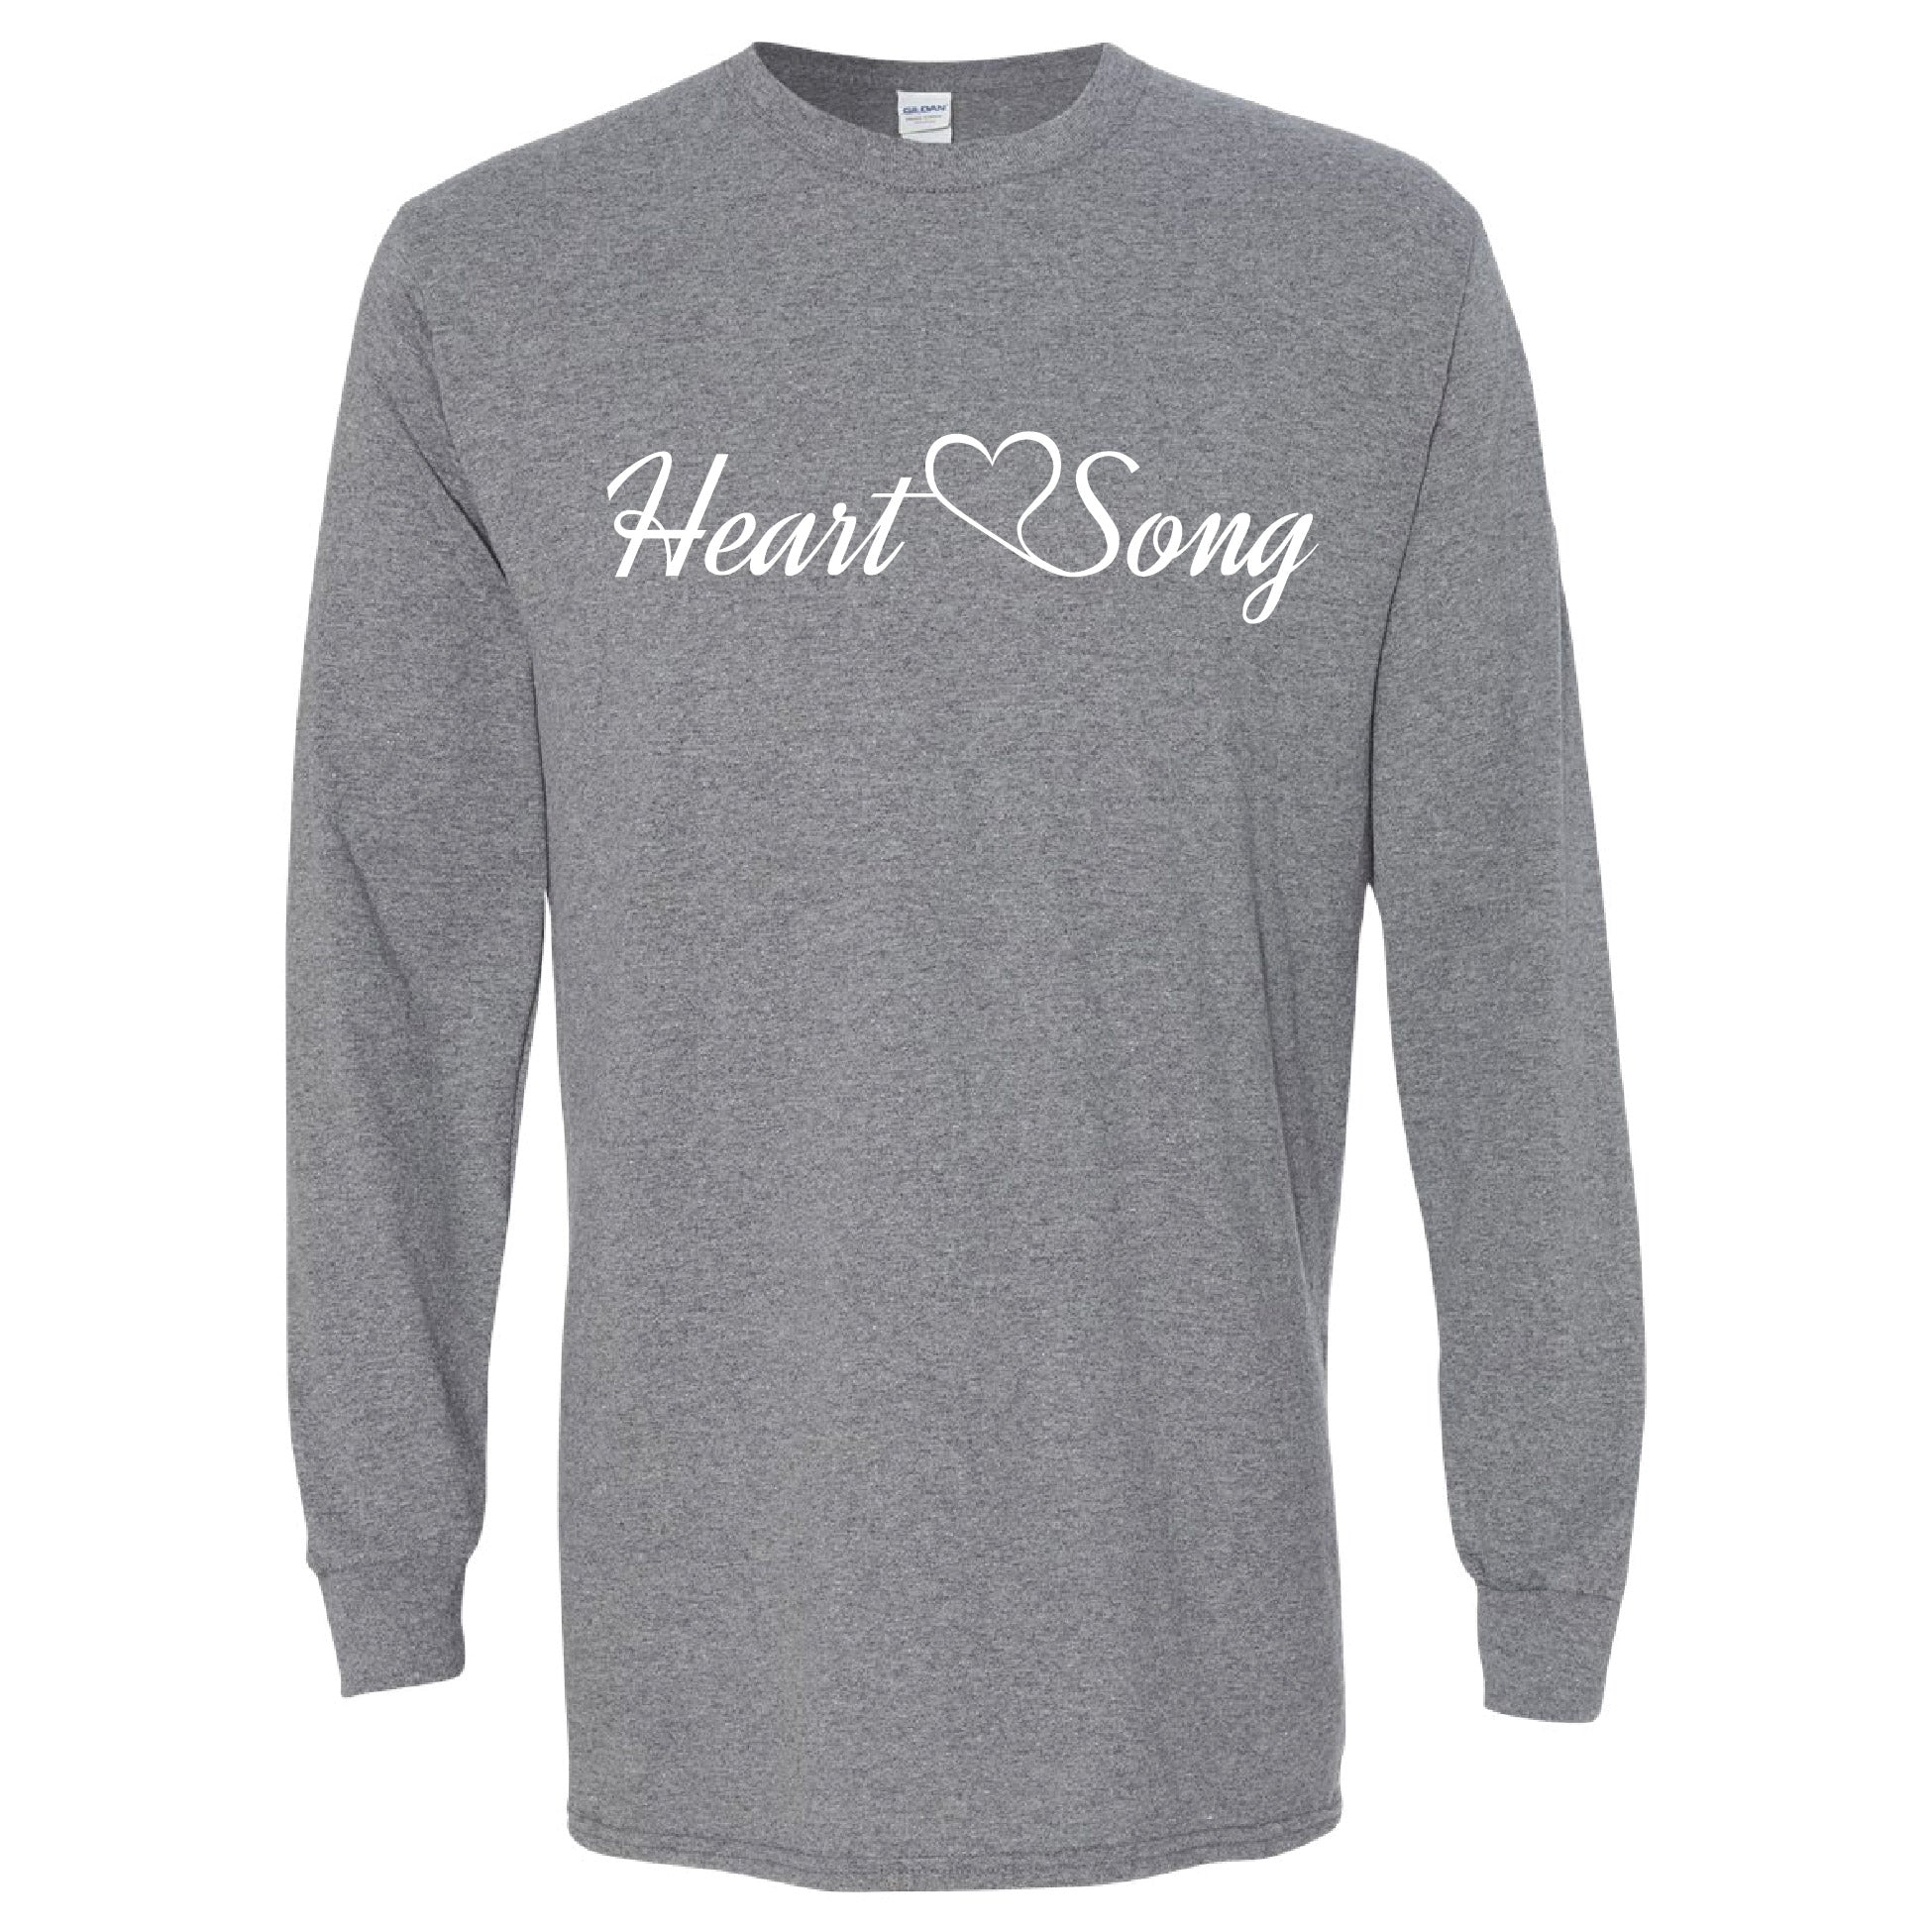 Heart Song Longsleeve T-Shirt